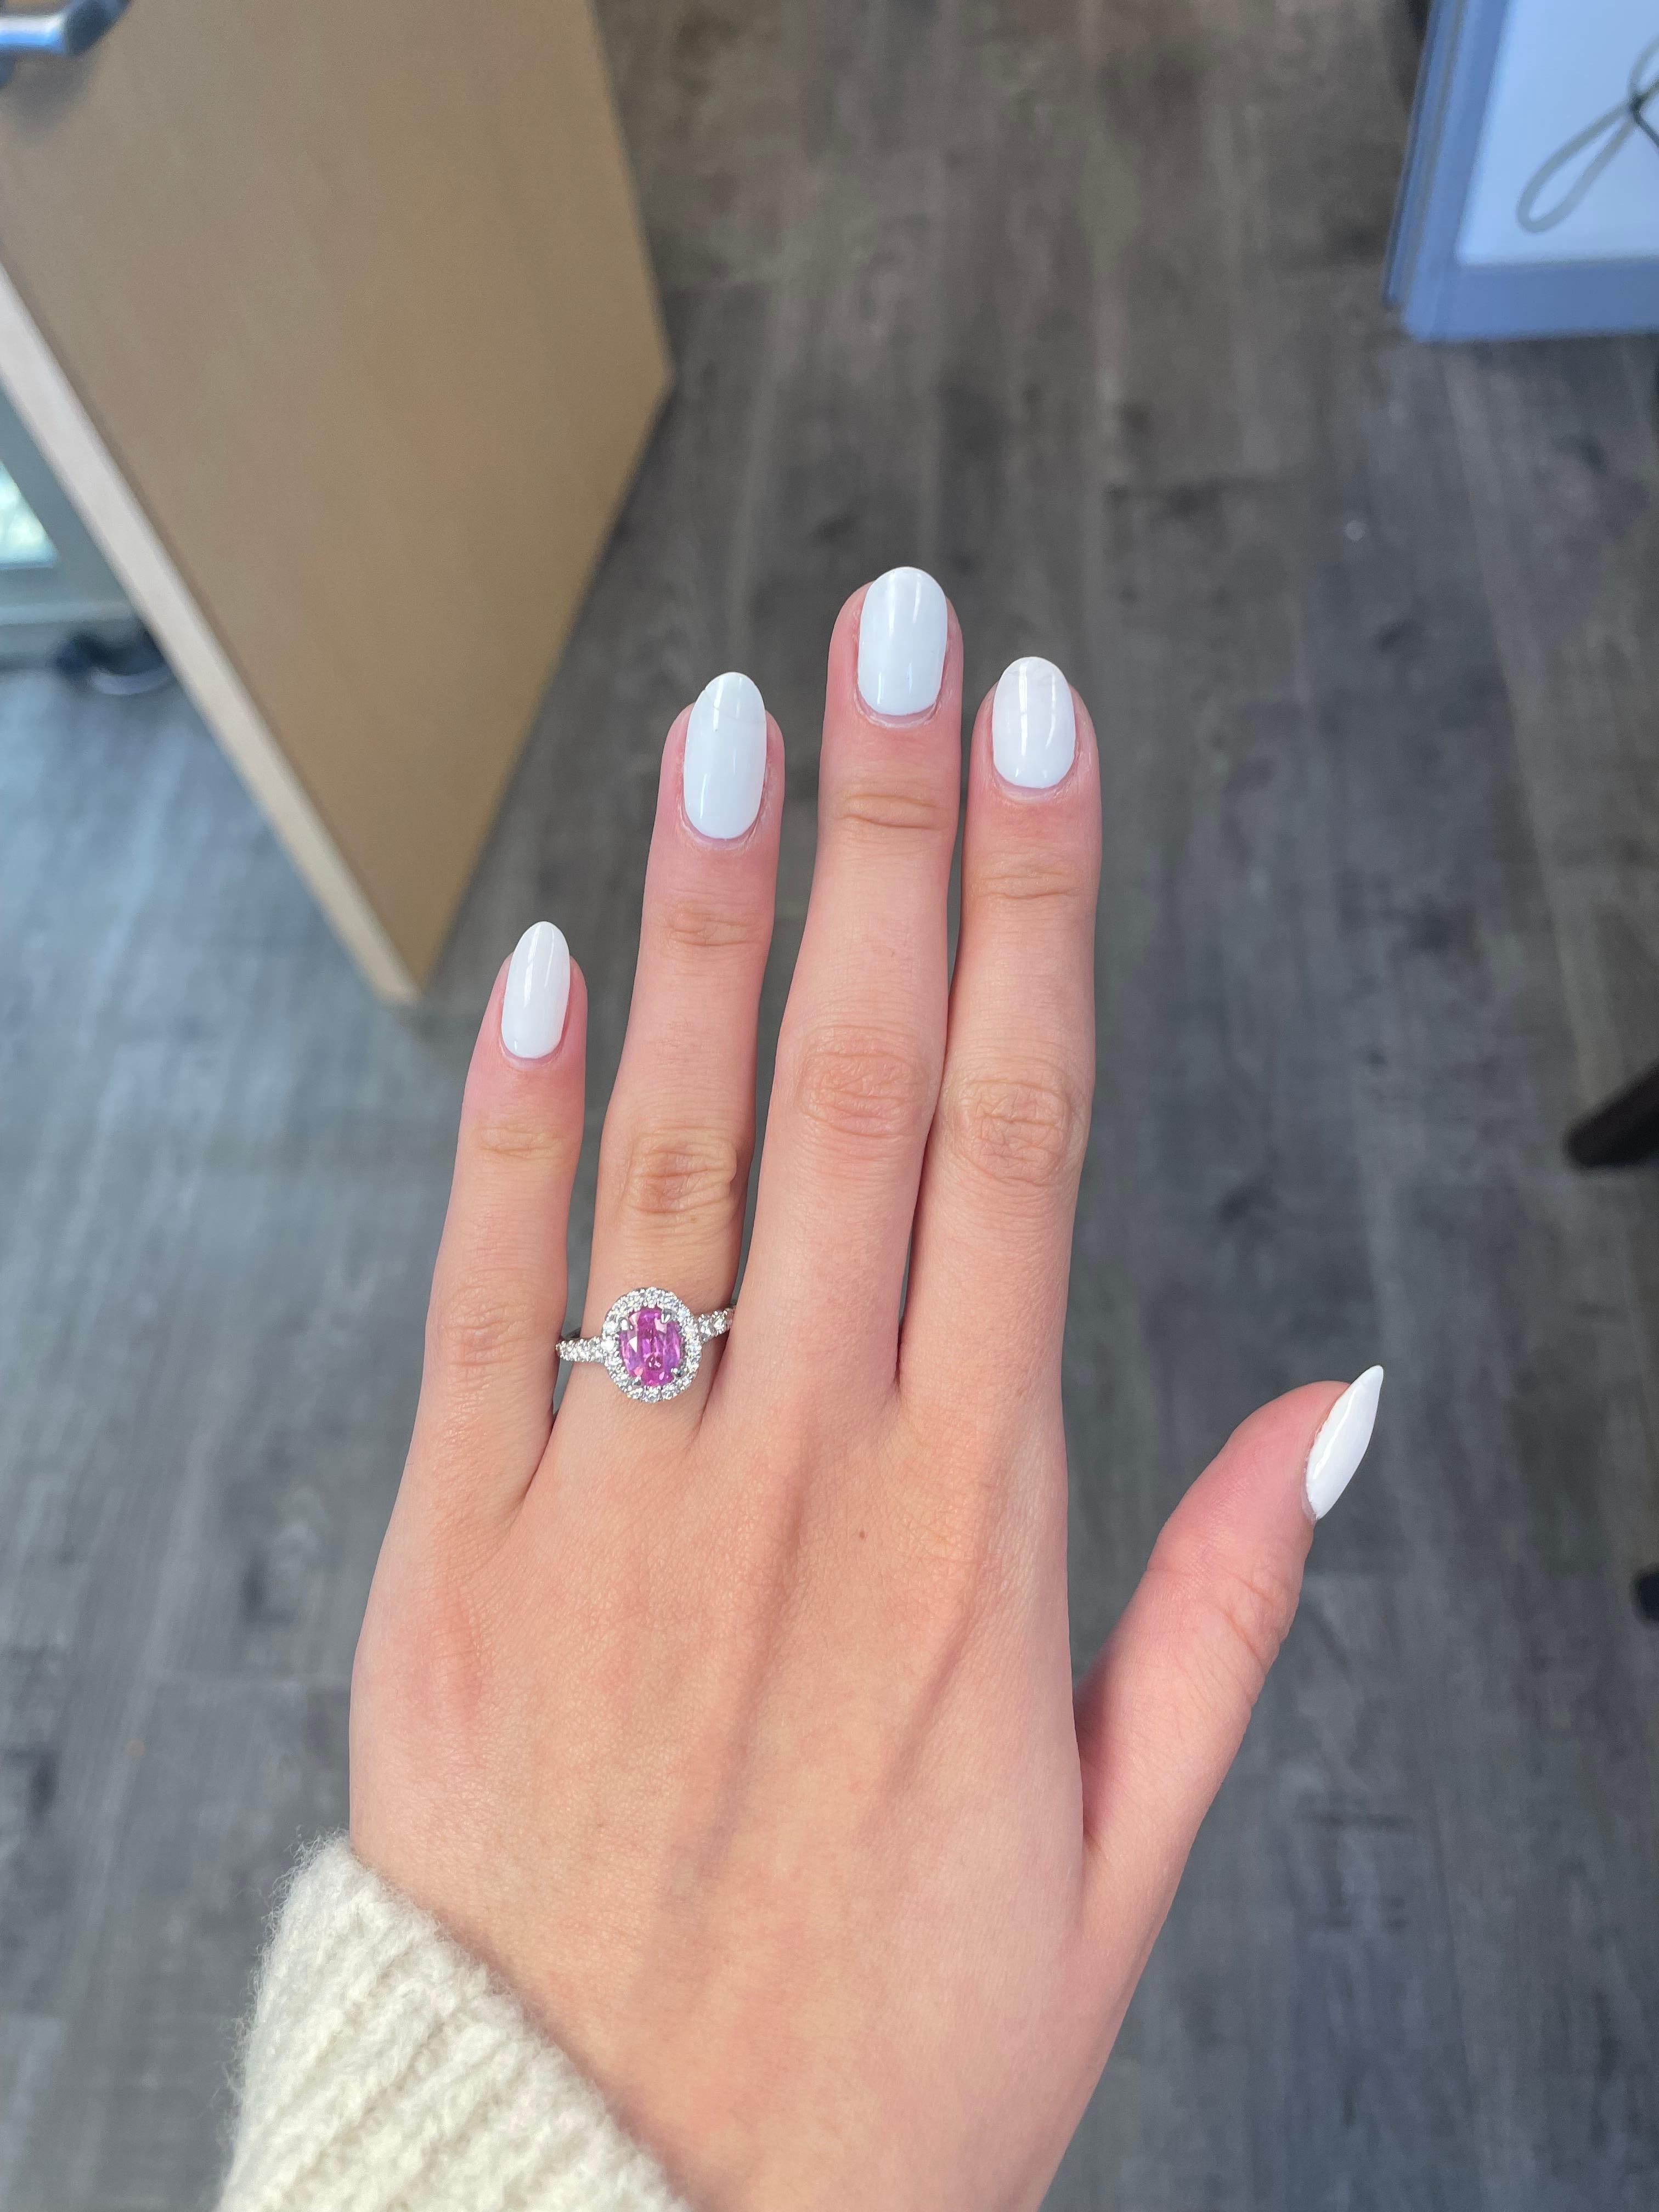 Schöner rosa Saphir mit Diamant Halo-Ring mit Diamant peek-a-boo, GIA zertifiziert.
1.41 Karat ovaler rosa Saphir, GIA zertifiziert Hitze. Ergänzt durch 32 runde Brillanten von 0,68 Karat. Ungefähr G/H Farbe und VS2/SI1 Klarheit. 18 Karat Weißgold,